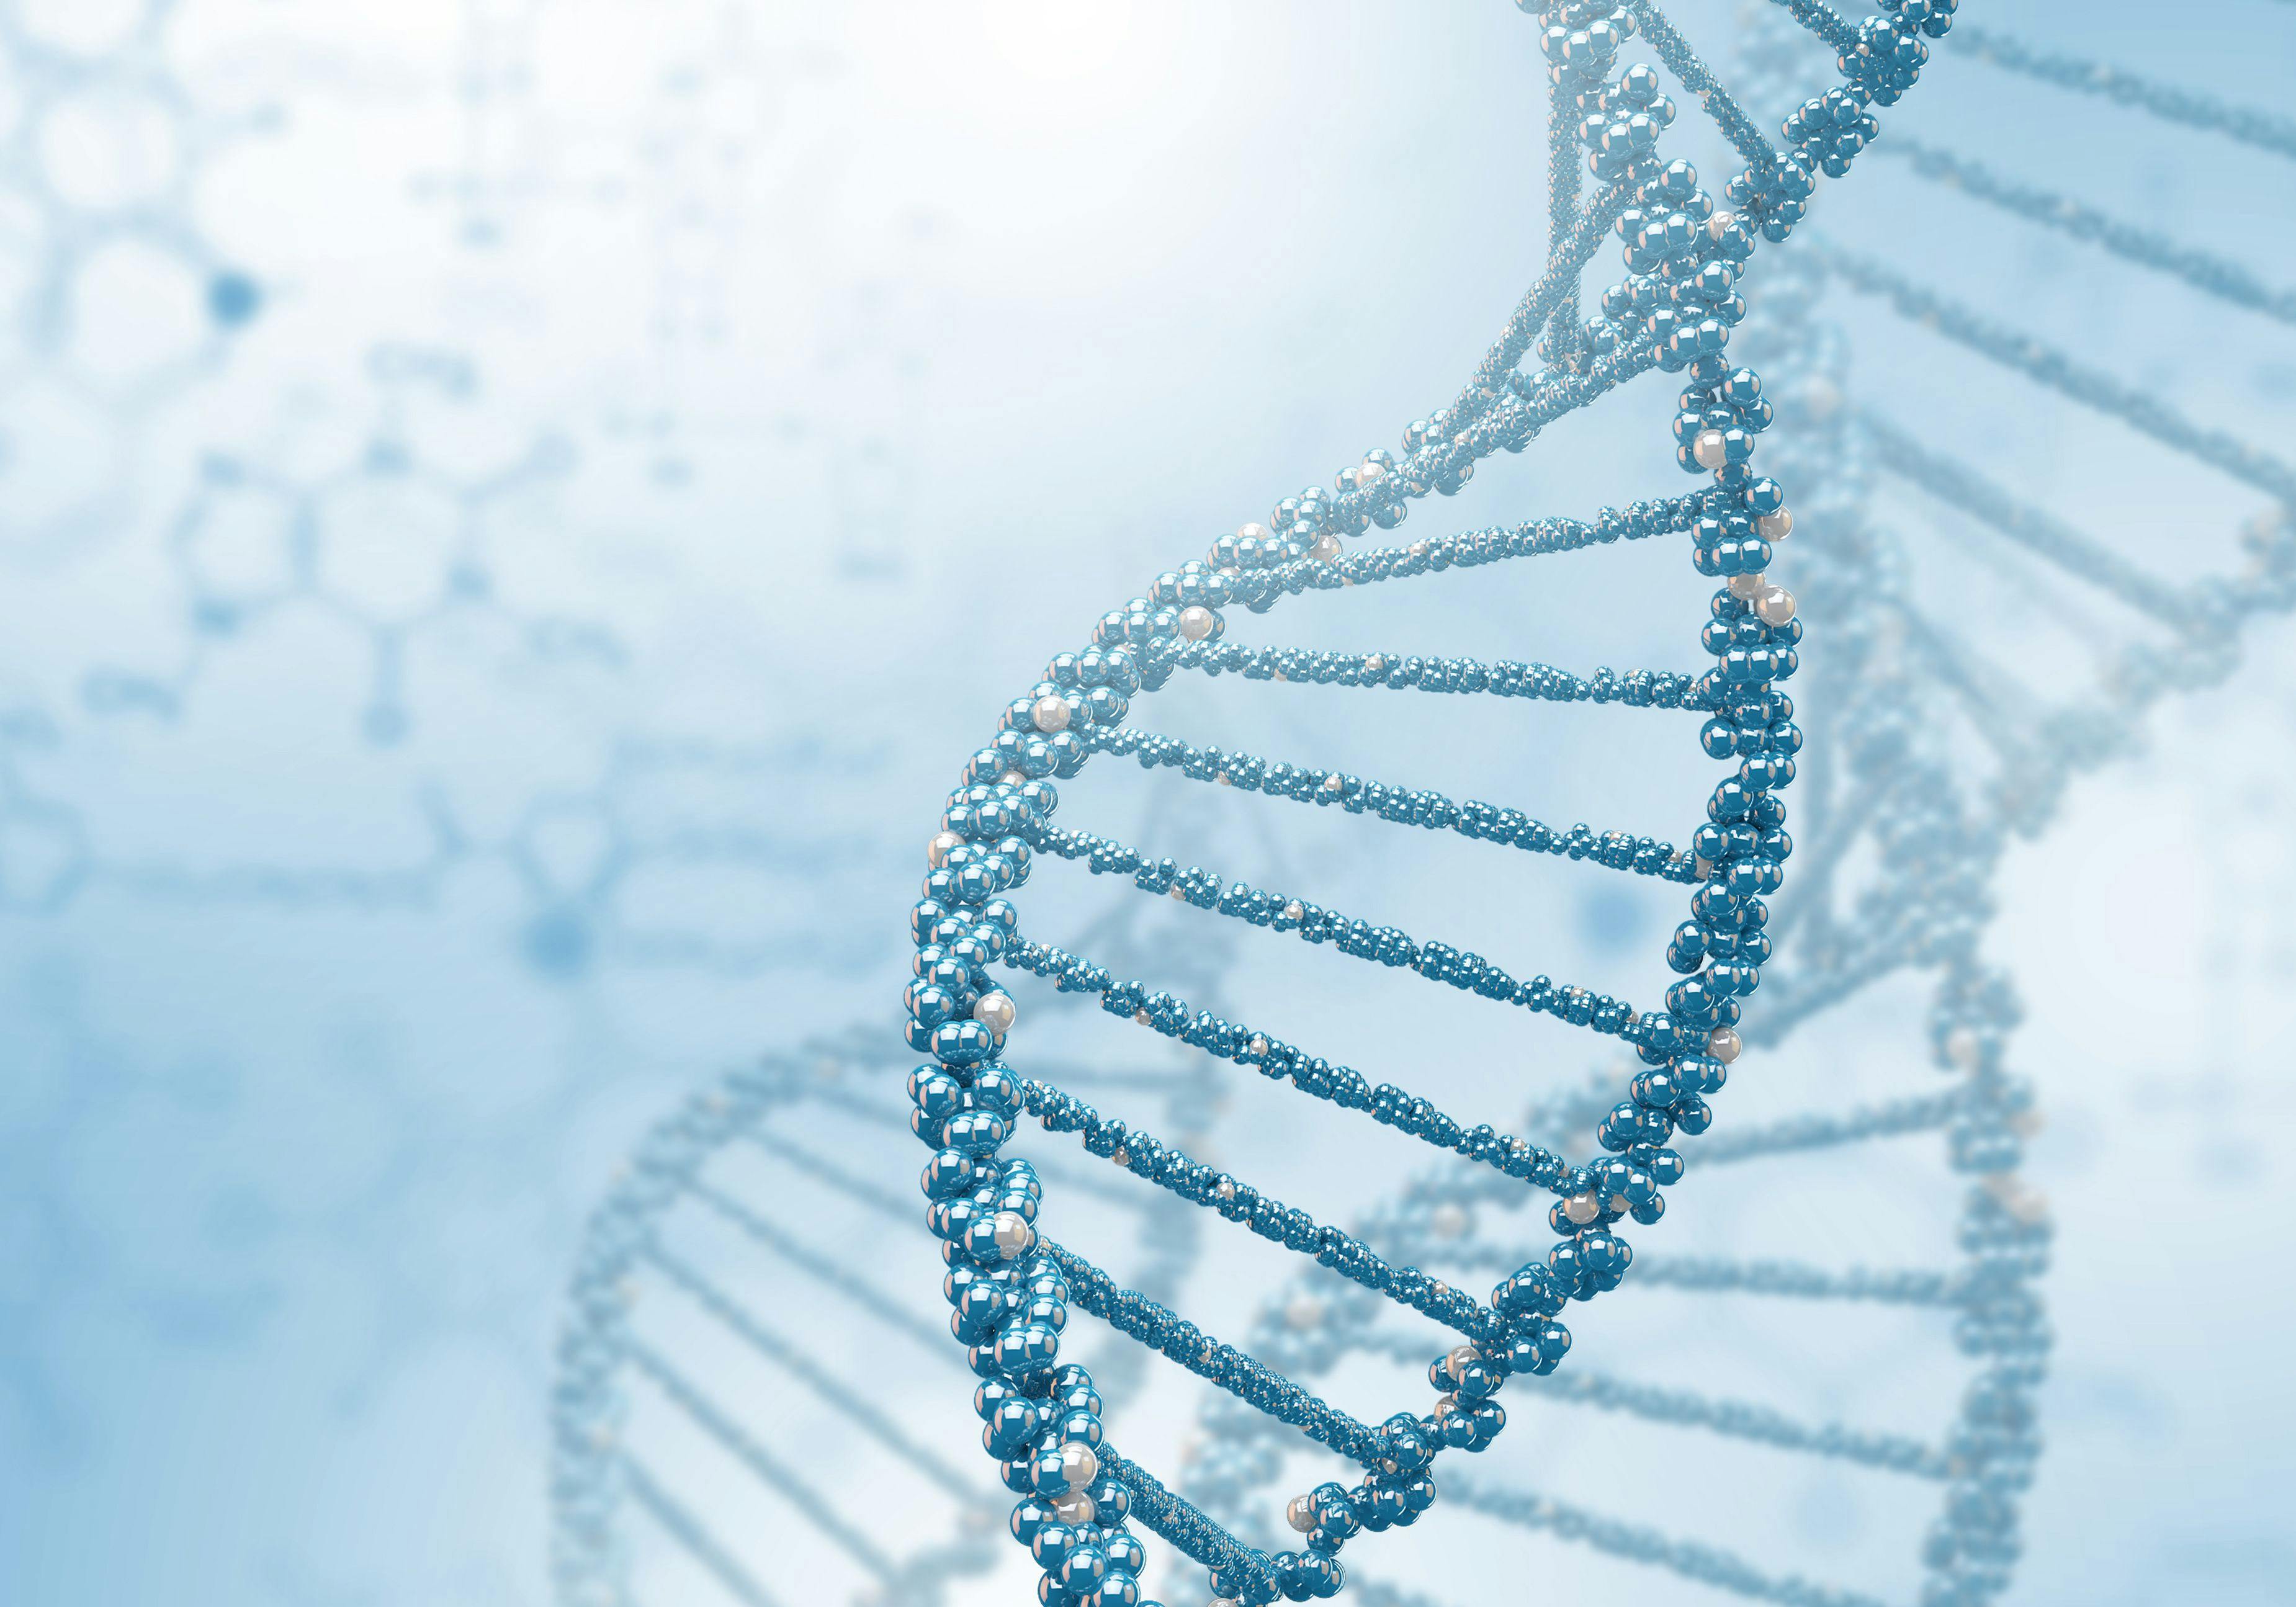 DNA strand illustration  | Image Credit: © Sergey Nivens - www.stock.adobe.com